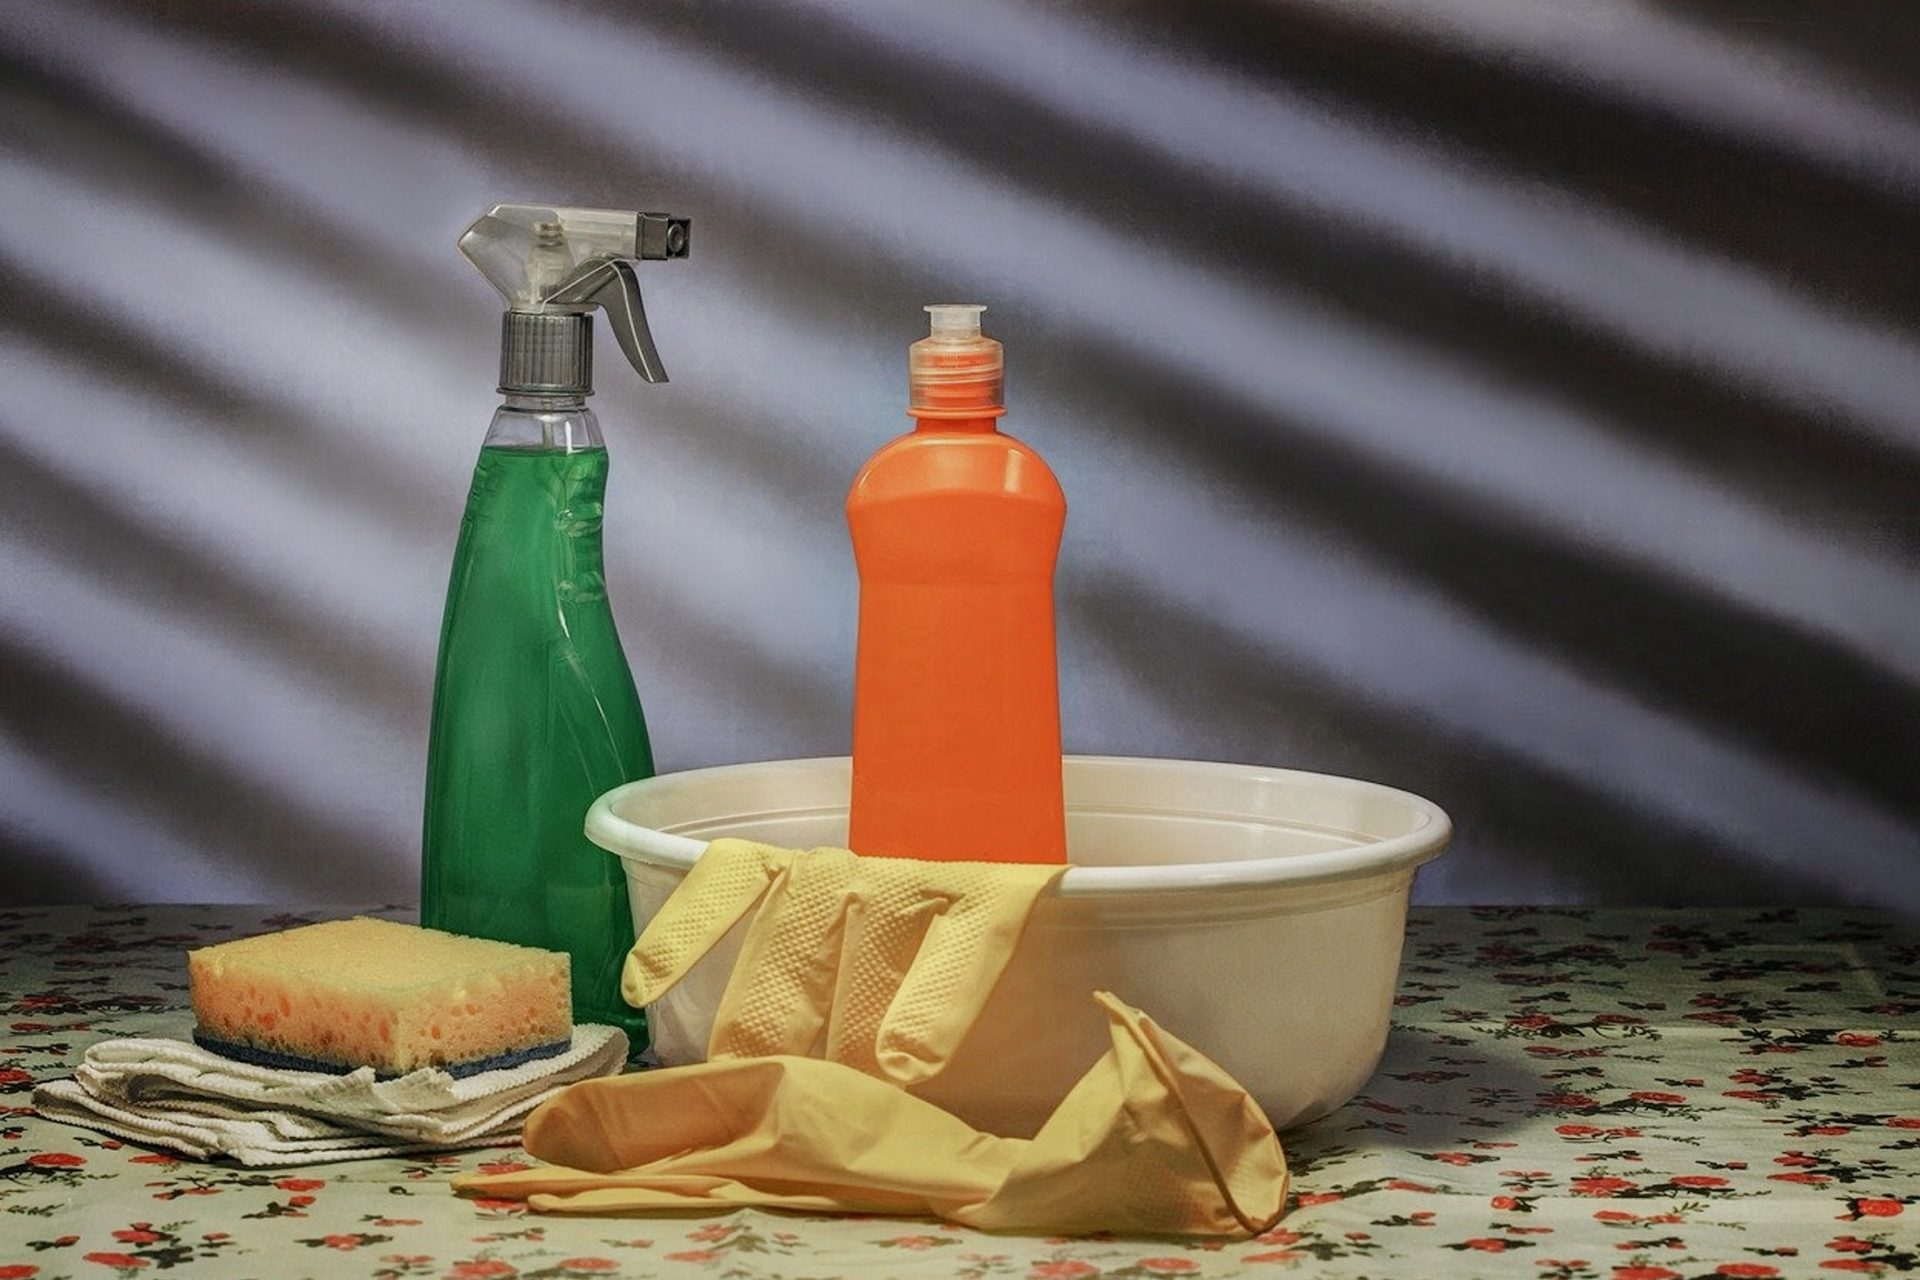 環境や人にやさしいエコな大掃除を目指そう|合成洗剤や石けんの使用量には注意が必要？